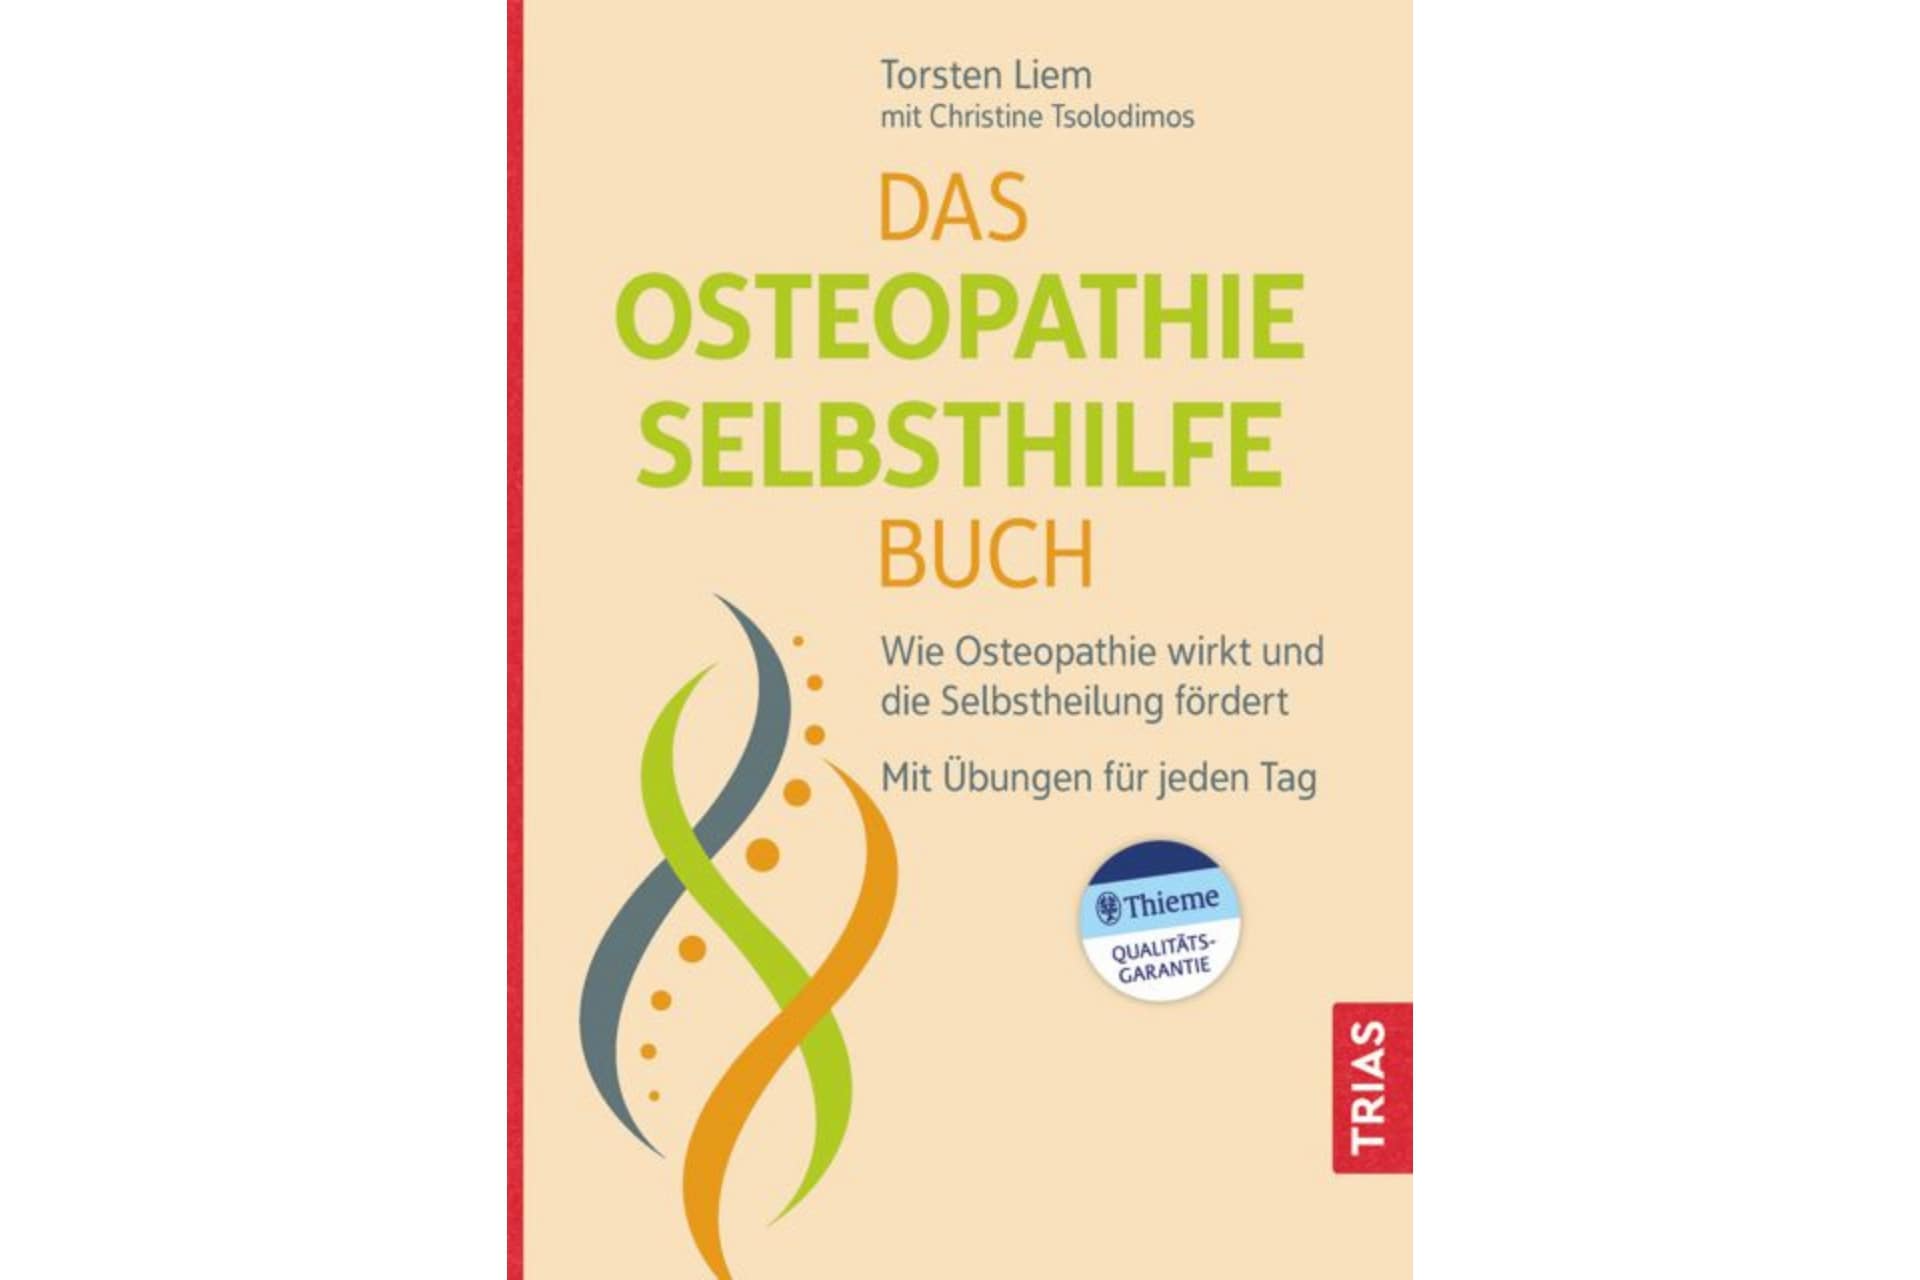 La copertina del libro osteopatico sulla vita privata con Osteopathie Hamburg.